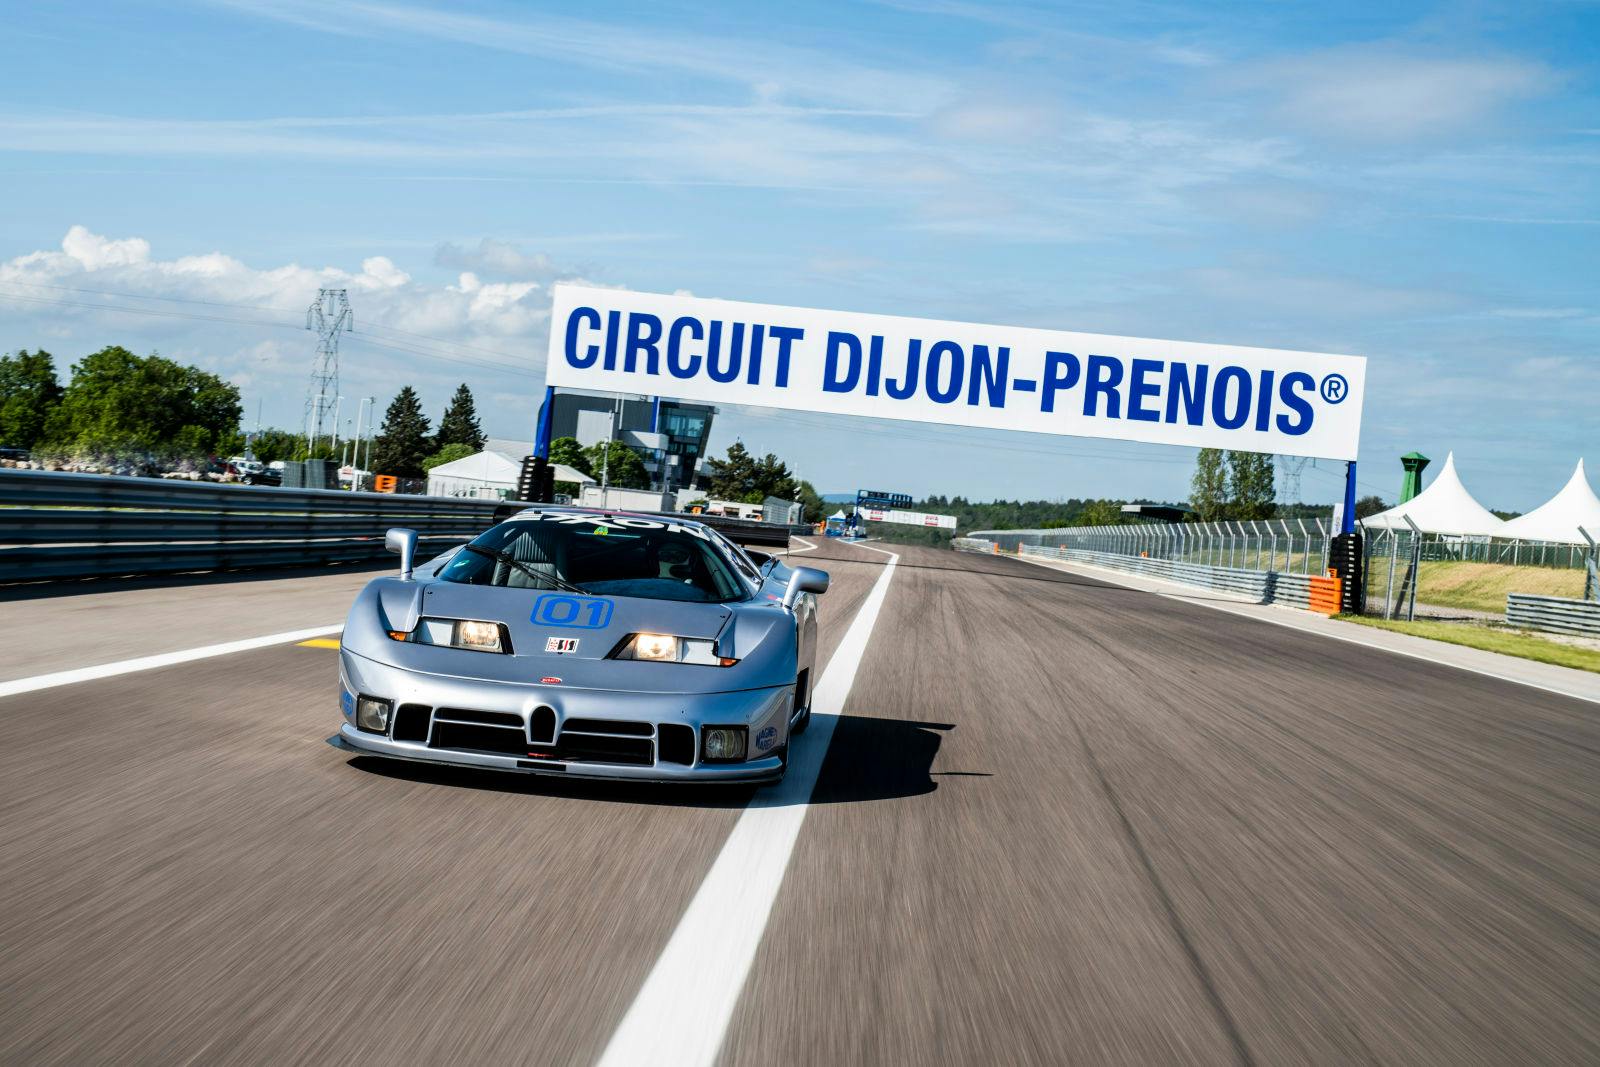 Bugatti EB 110 Sport Competizione – De retour sur la ligne d’arrivée à Dijon après 25 ans.